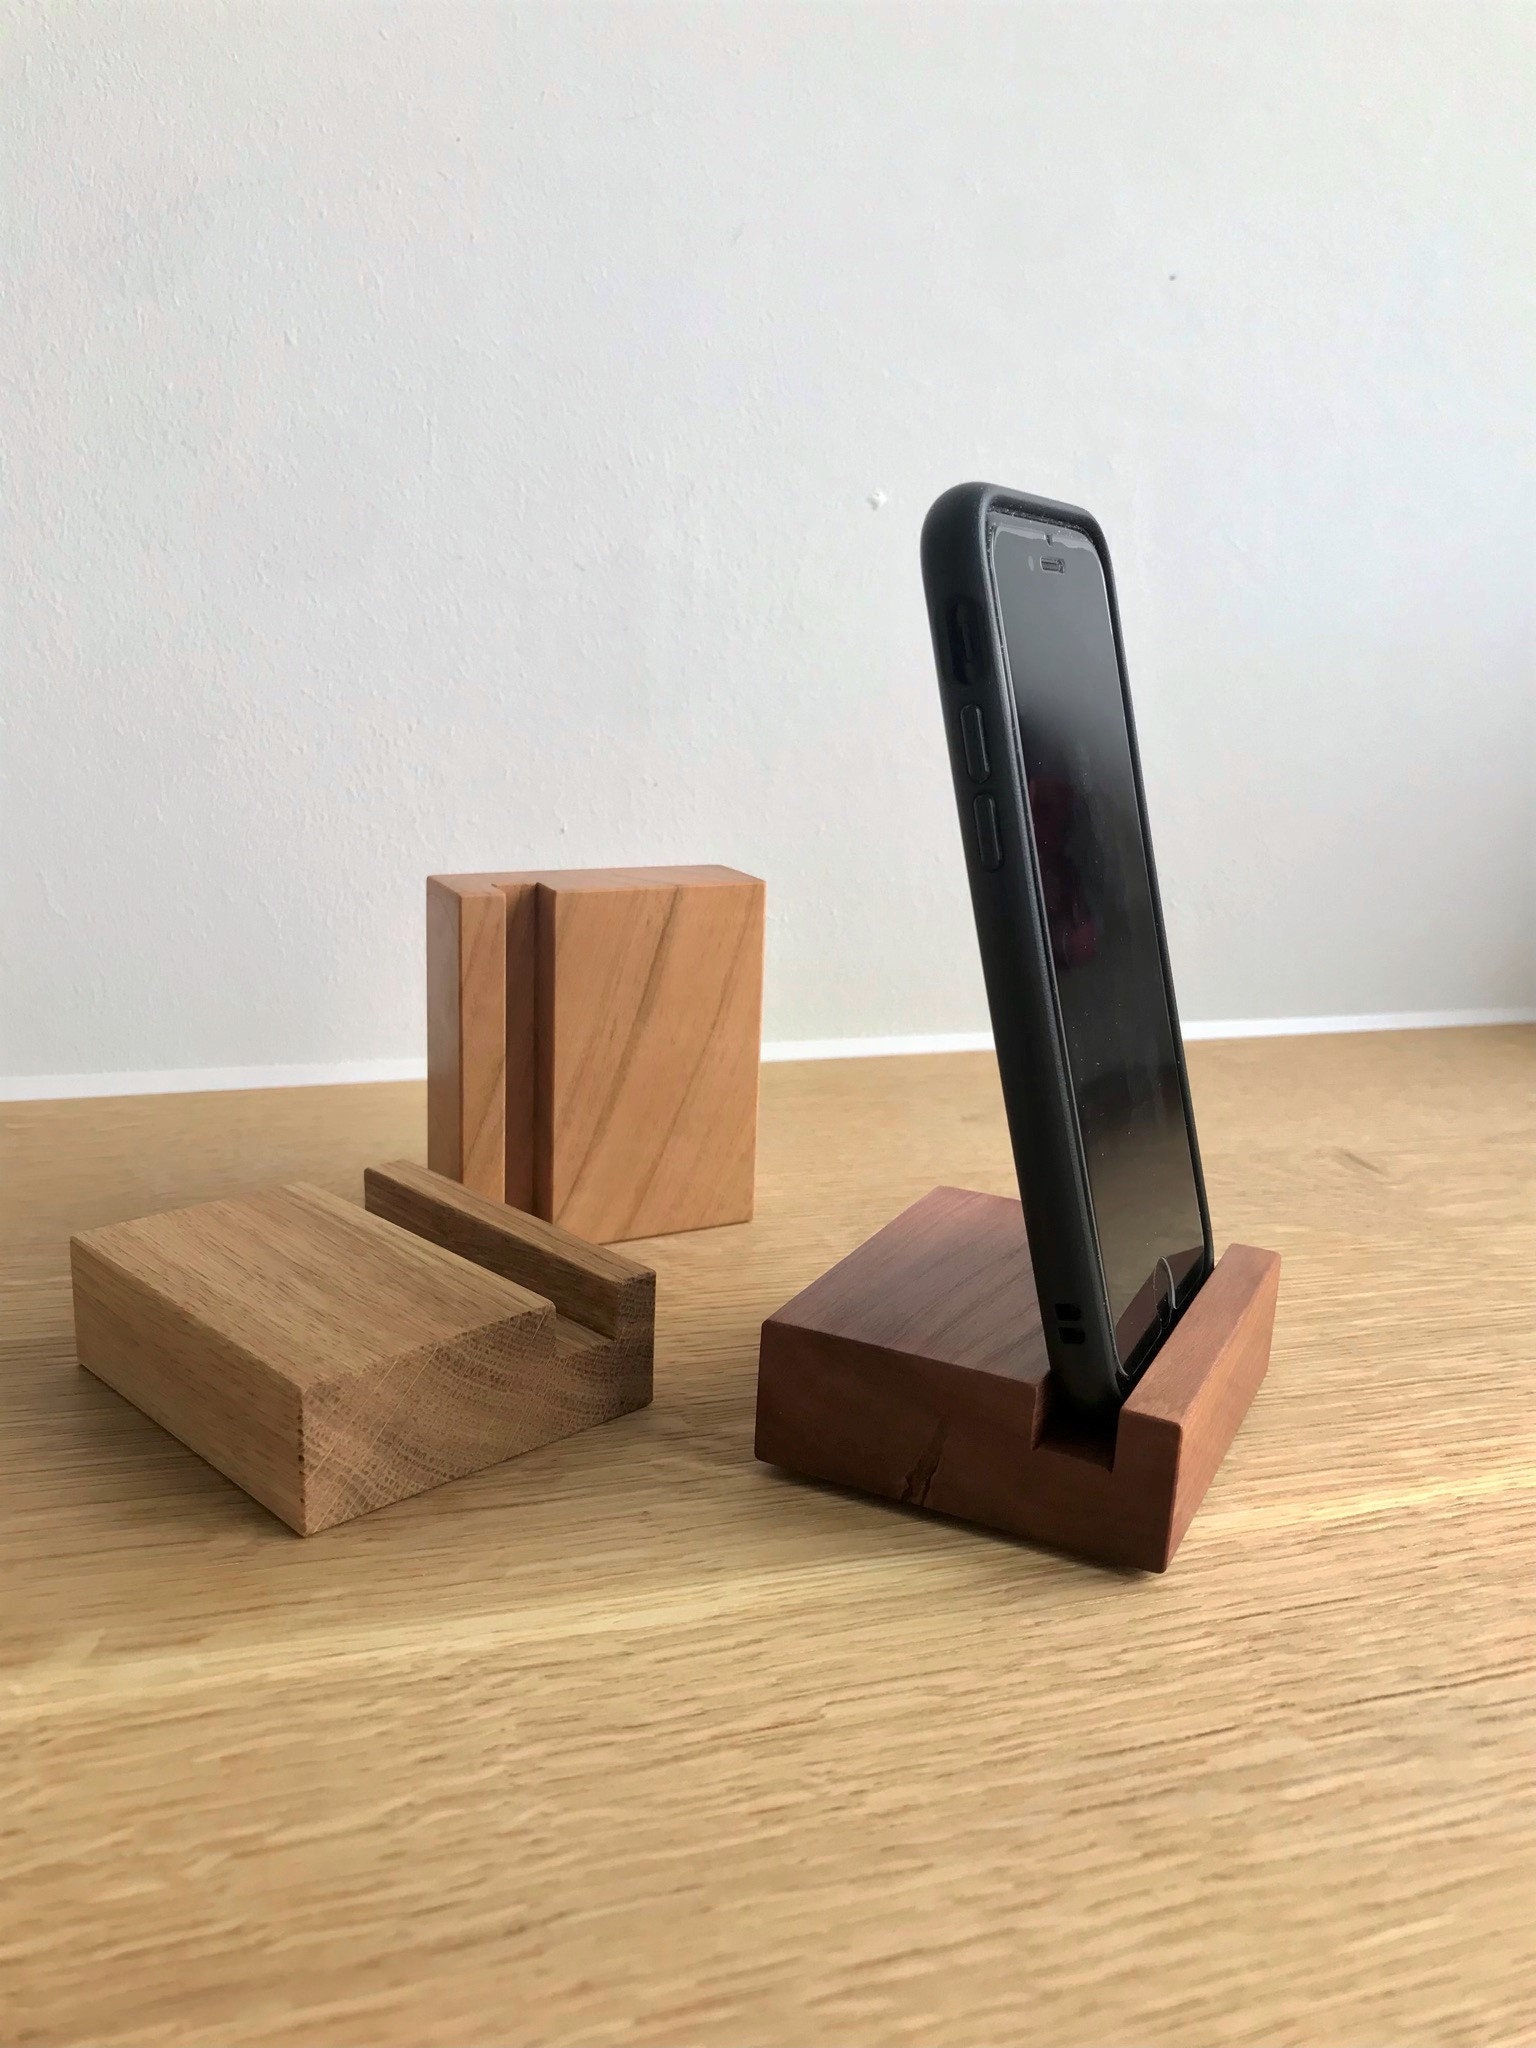 Holz Wandhalterung Handyhalter Handy Lade Hängen Personalisierte